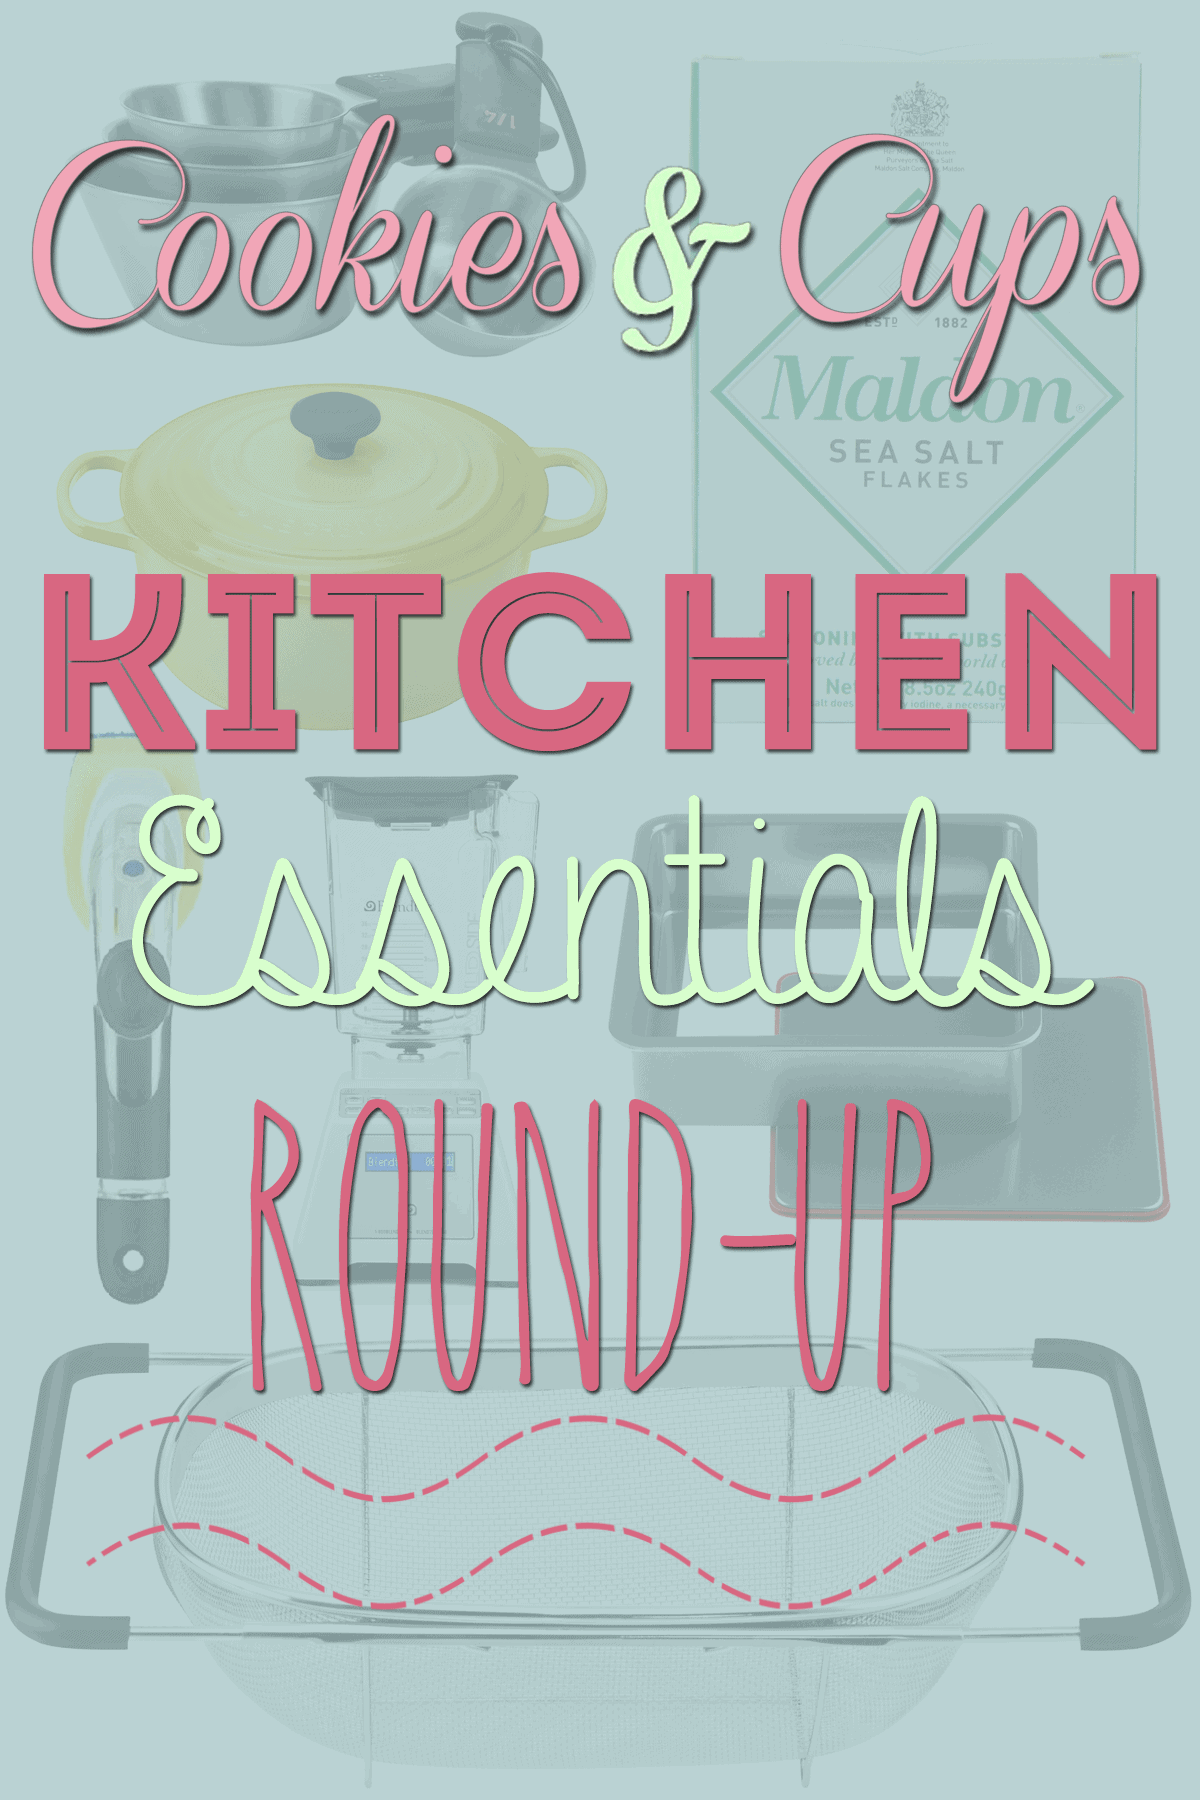 My Current Kitchen and Baking Essentials